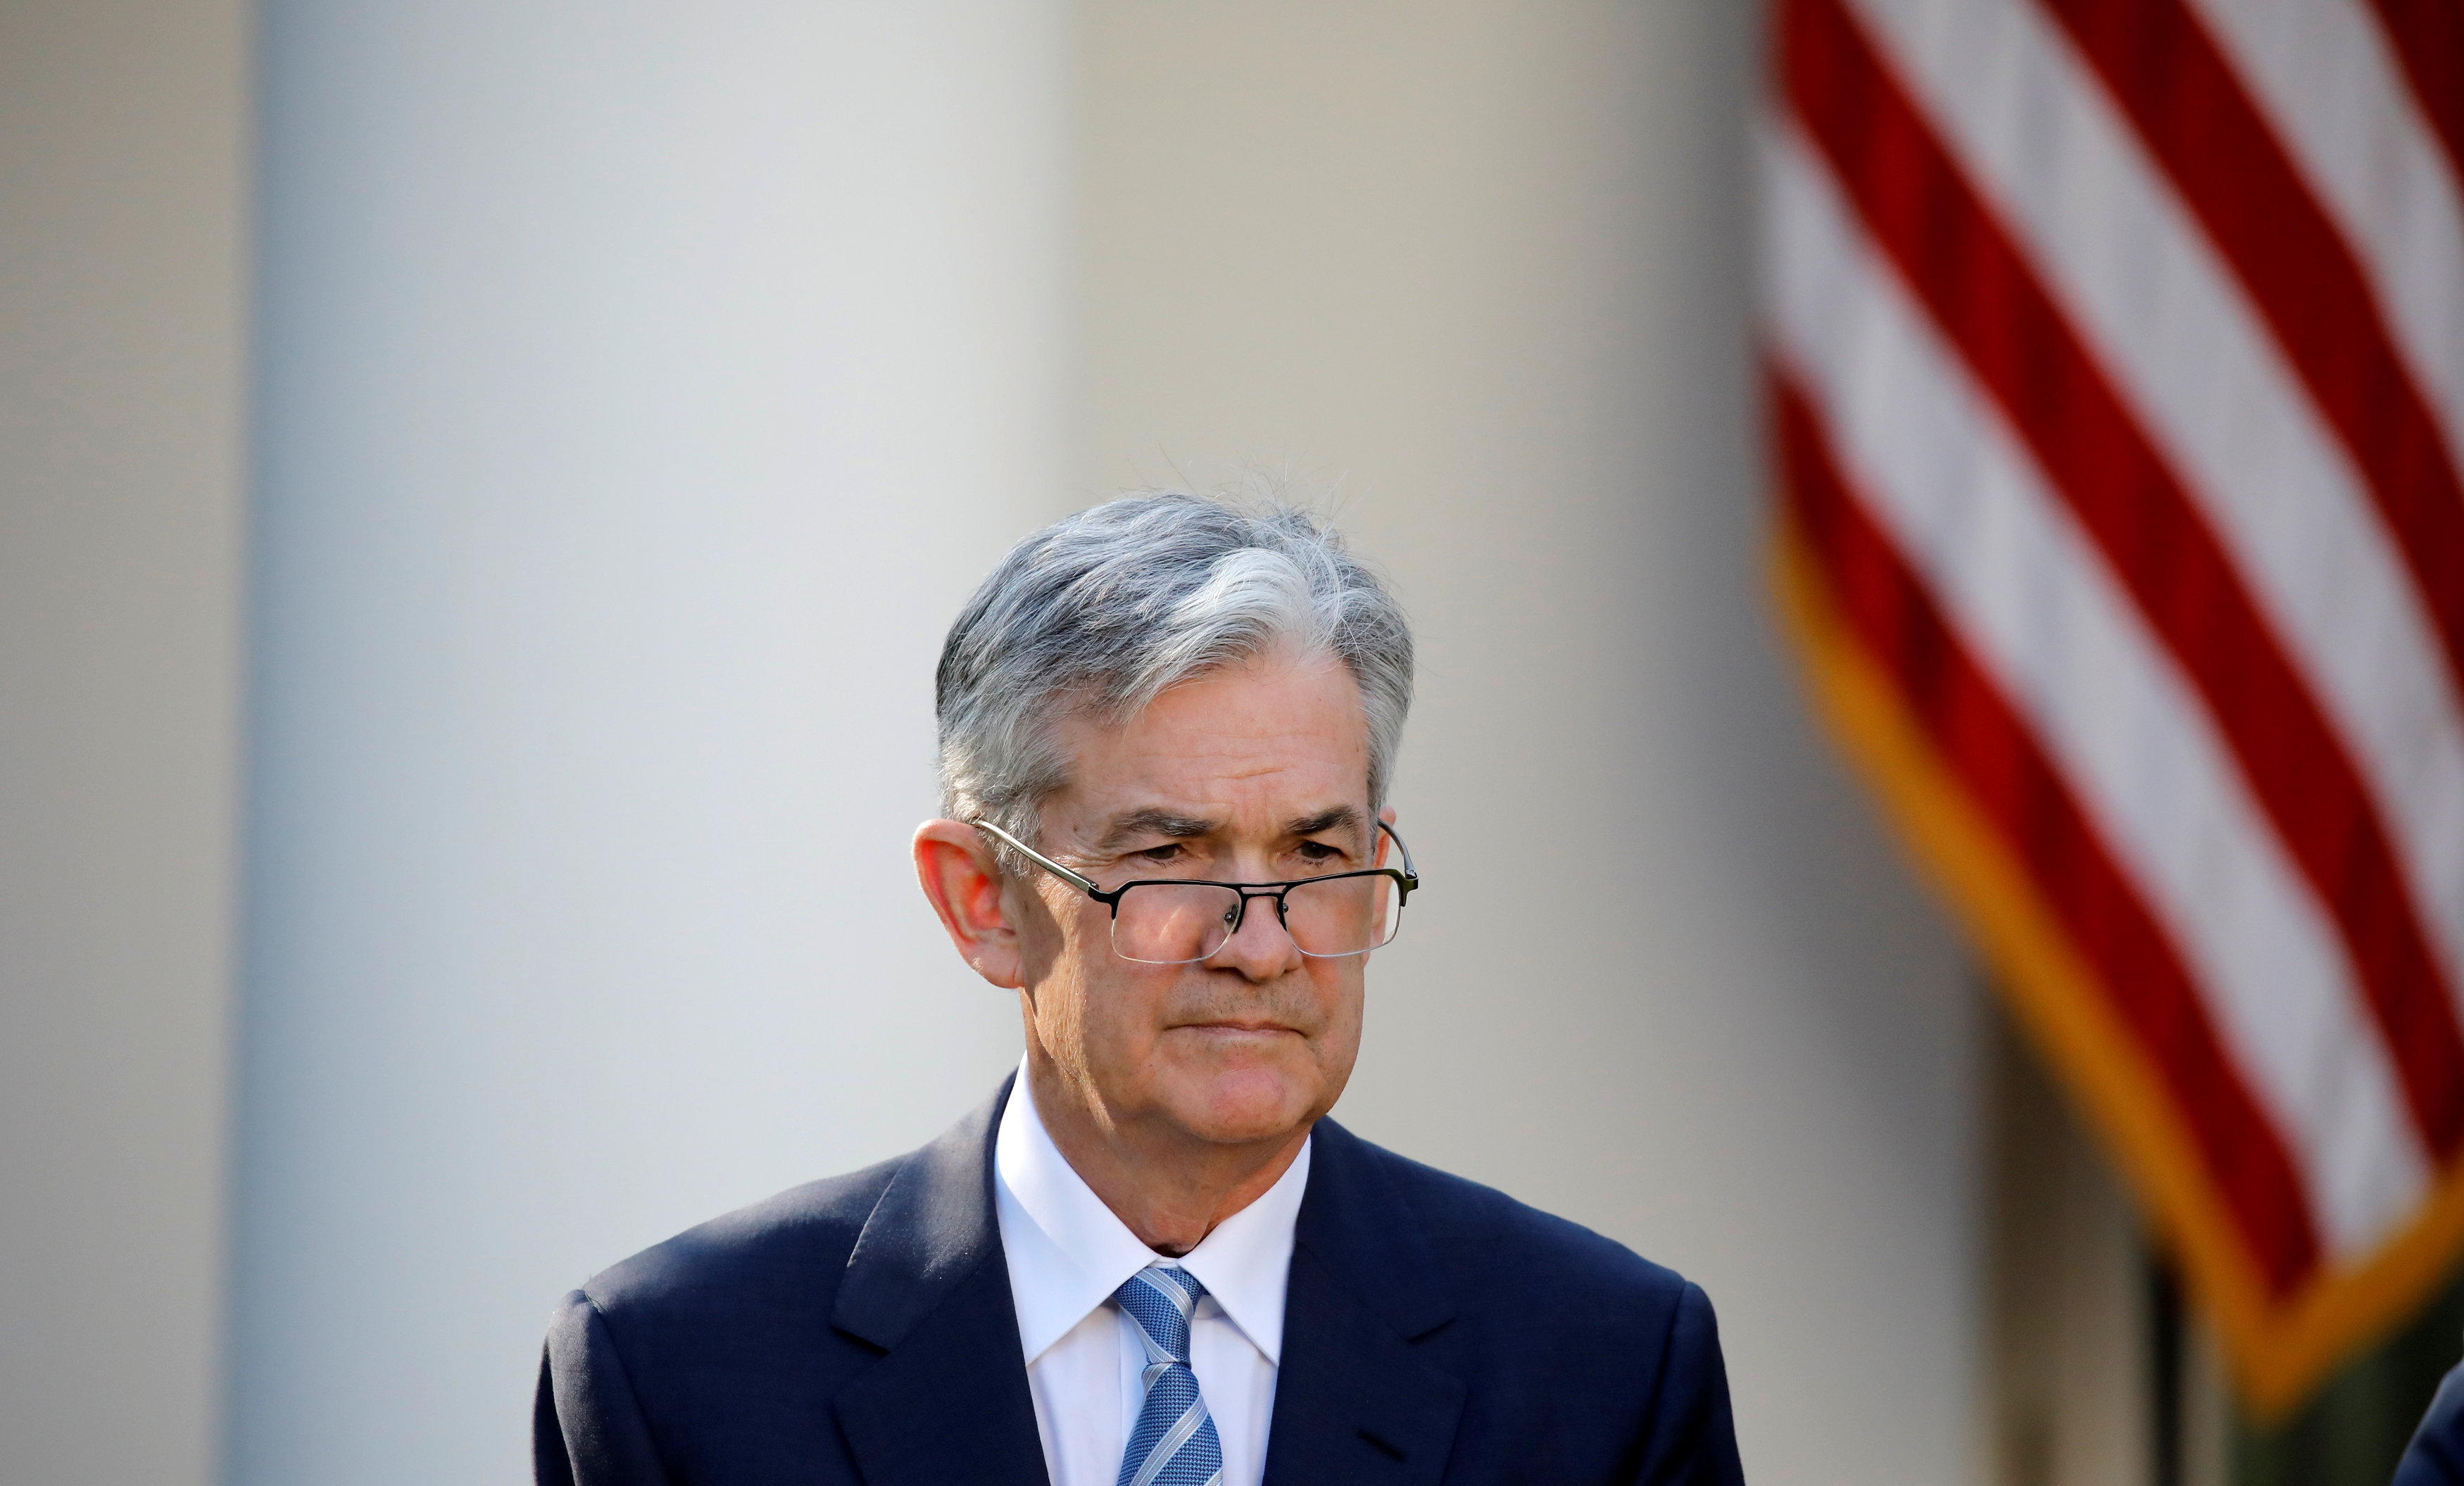 Powell defiende enfoque de Yellen sobre empleos